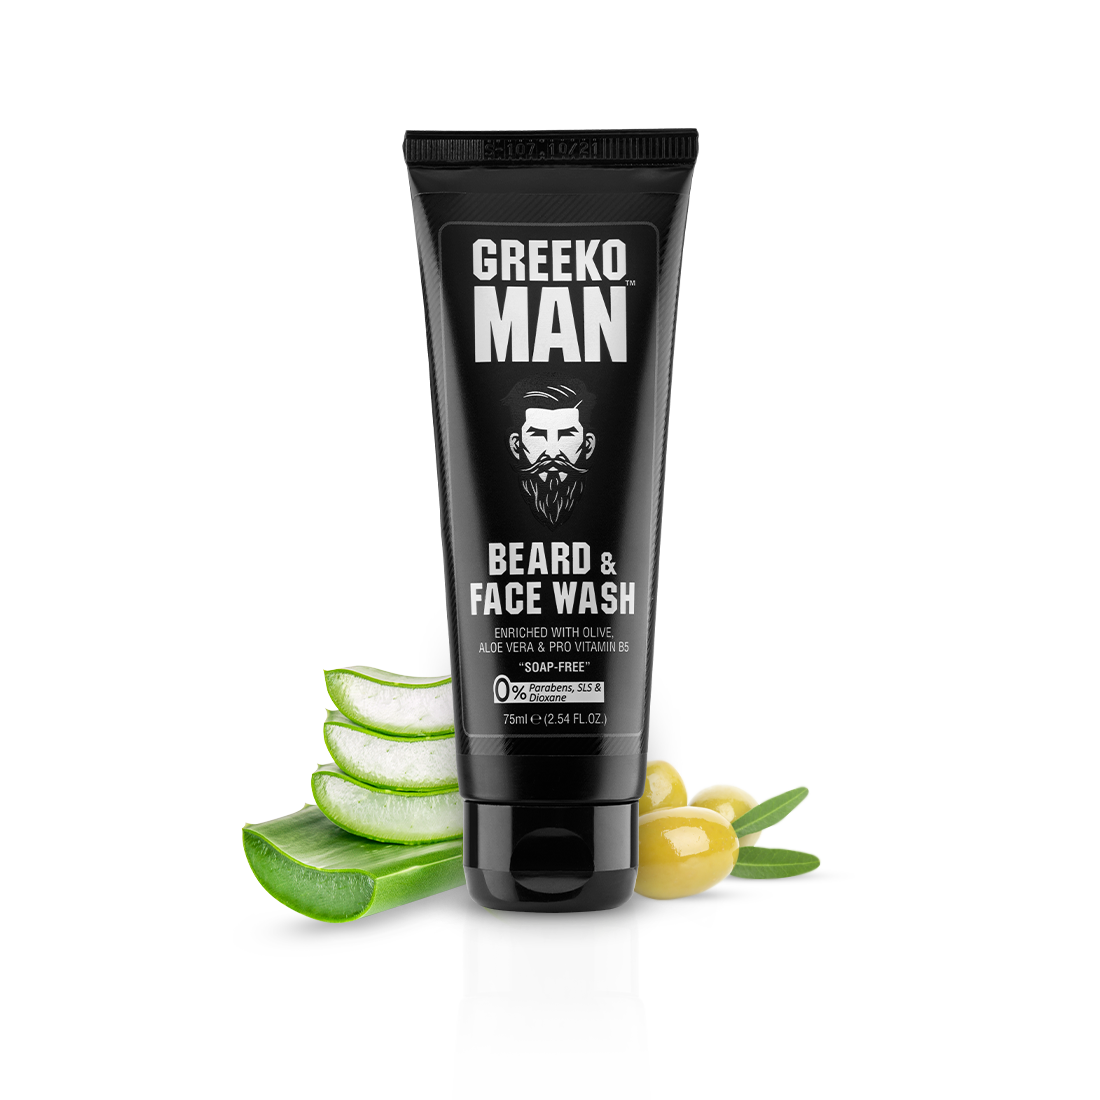 Greeko man Beard & Face Wash